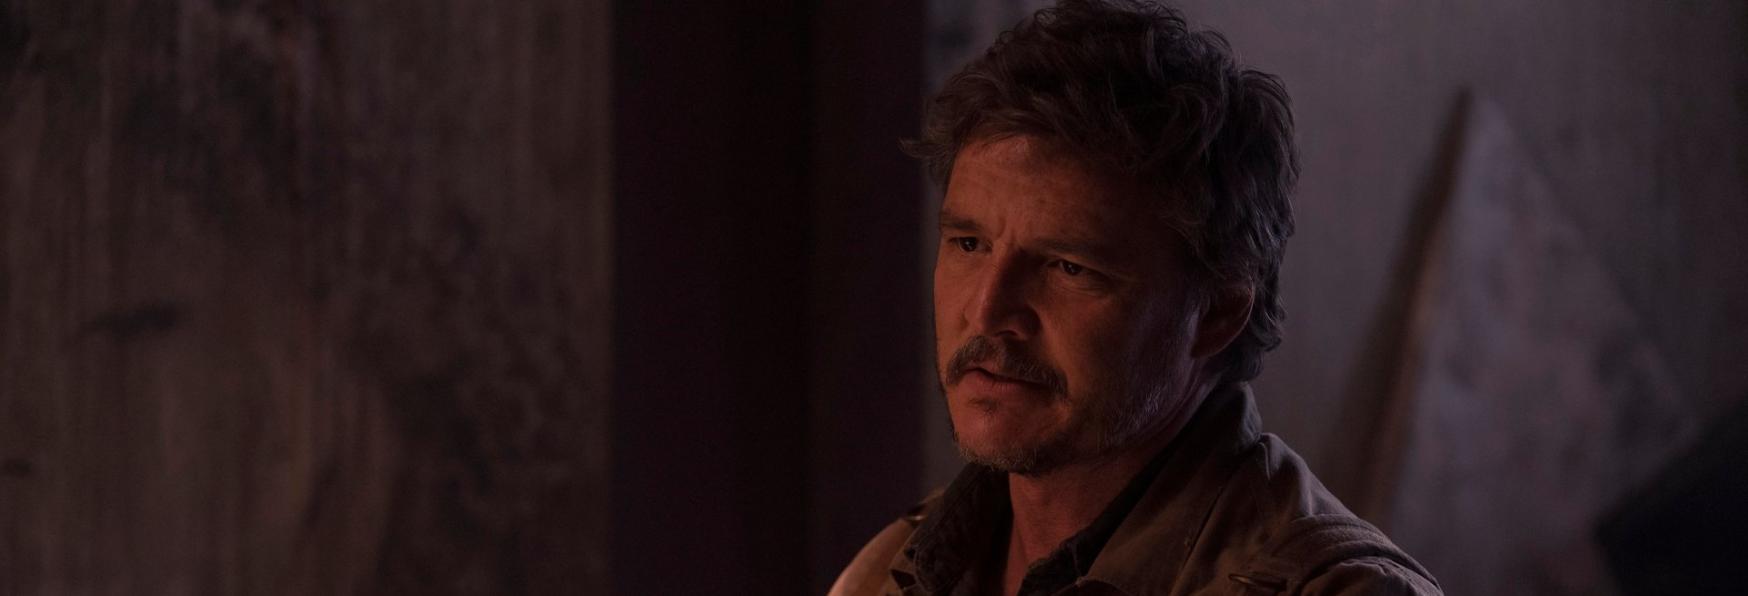 The Last of Us 2 ci sarà! Rinnovata per una Stagione la Serie TV targata HBO